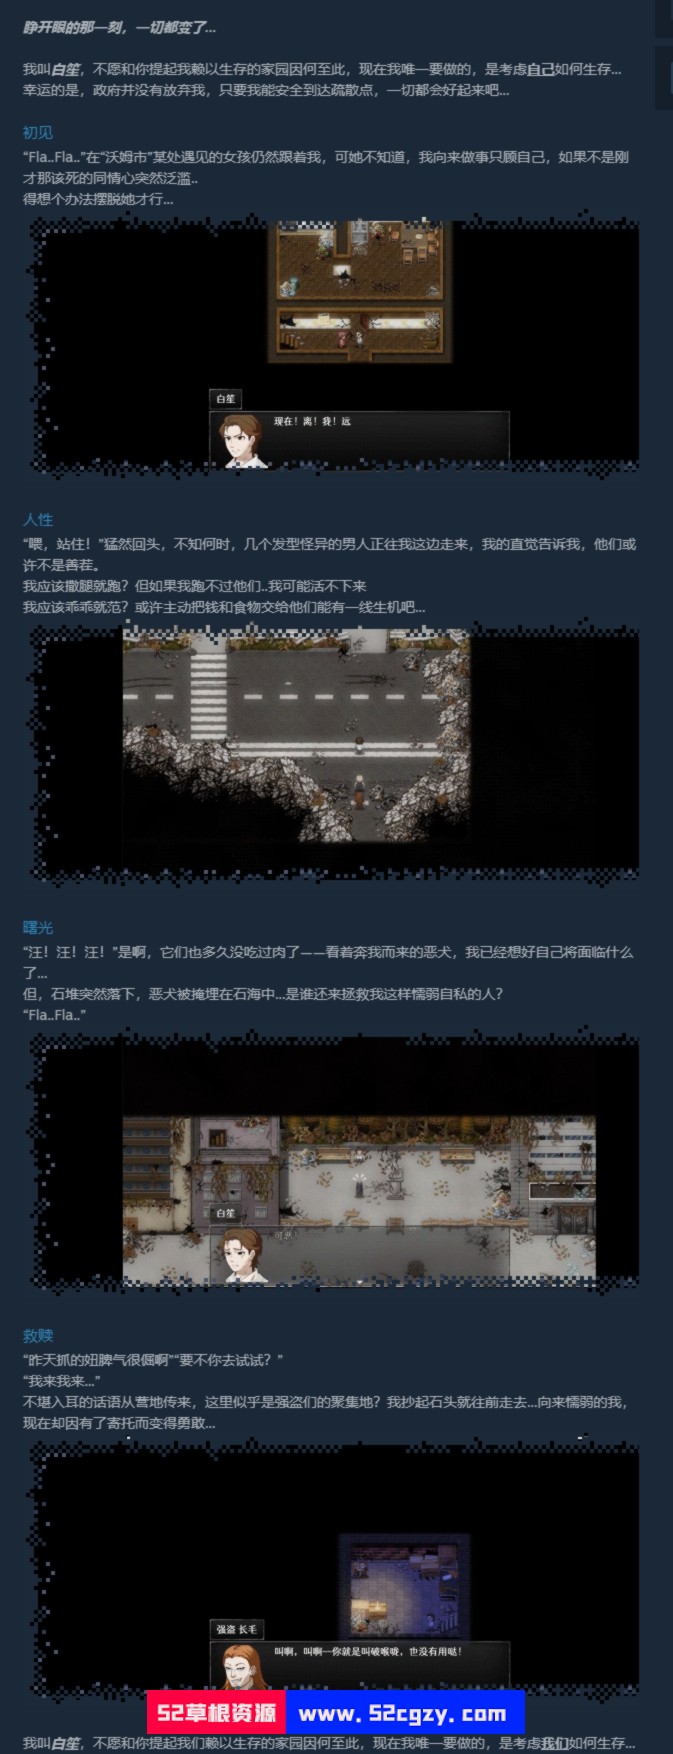 《残世界的鸢尾花》免安装-Build.9966142-1.2.0绿色中文版[473MB] 单机游戏 第8张